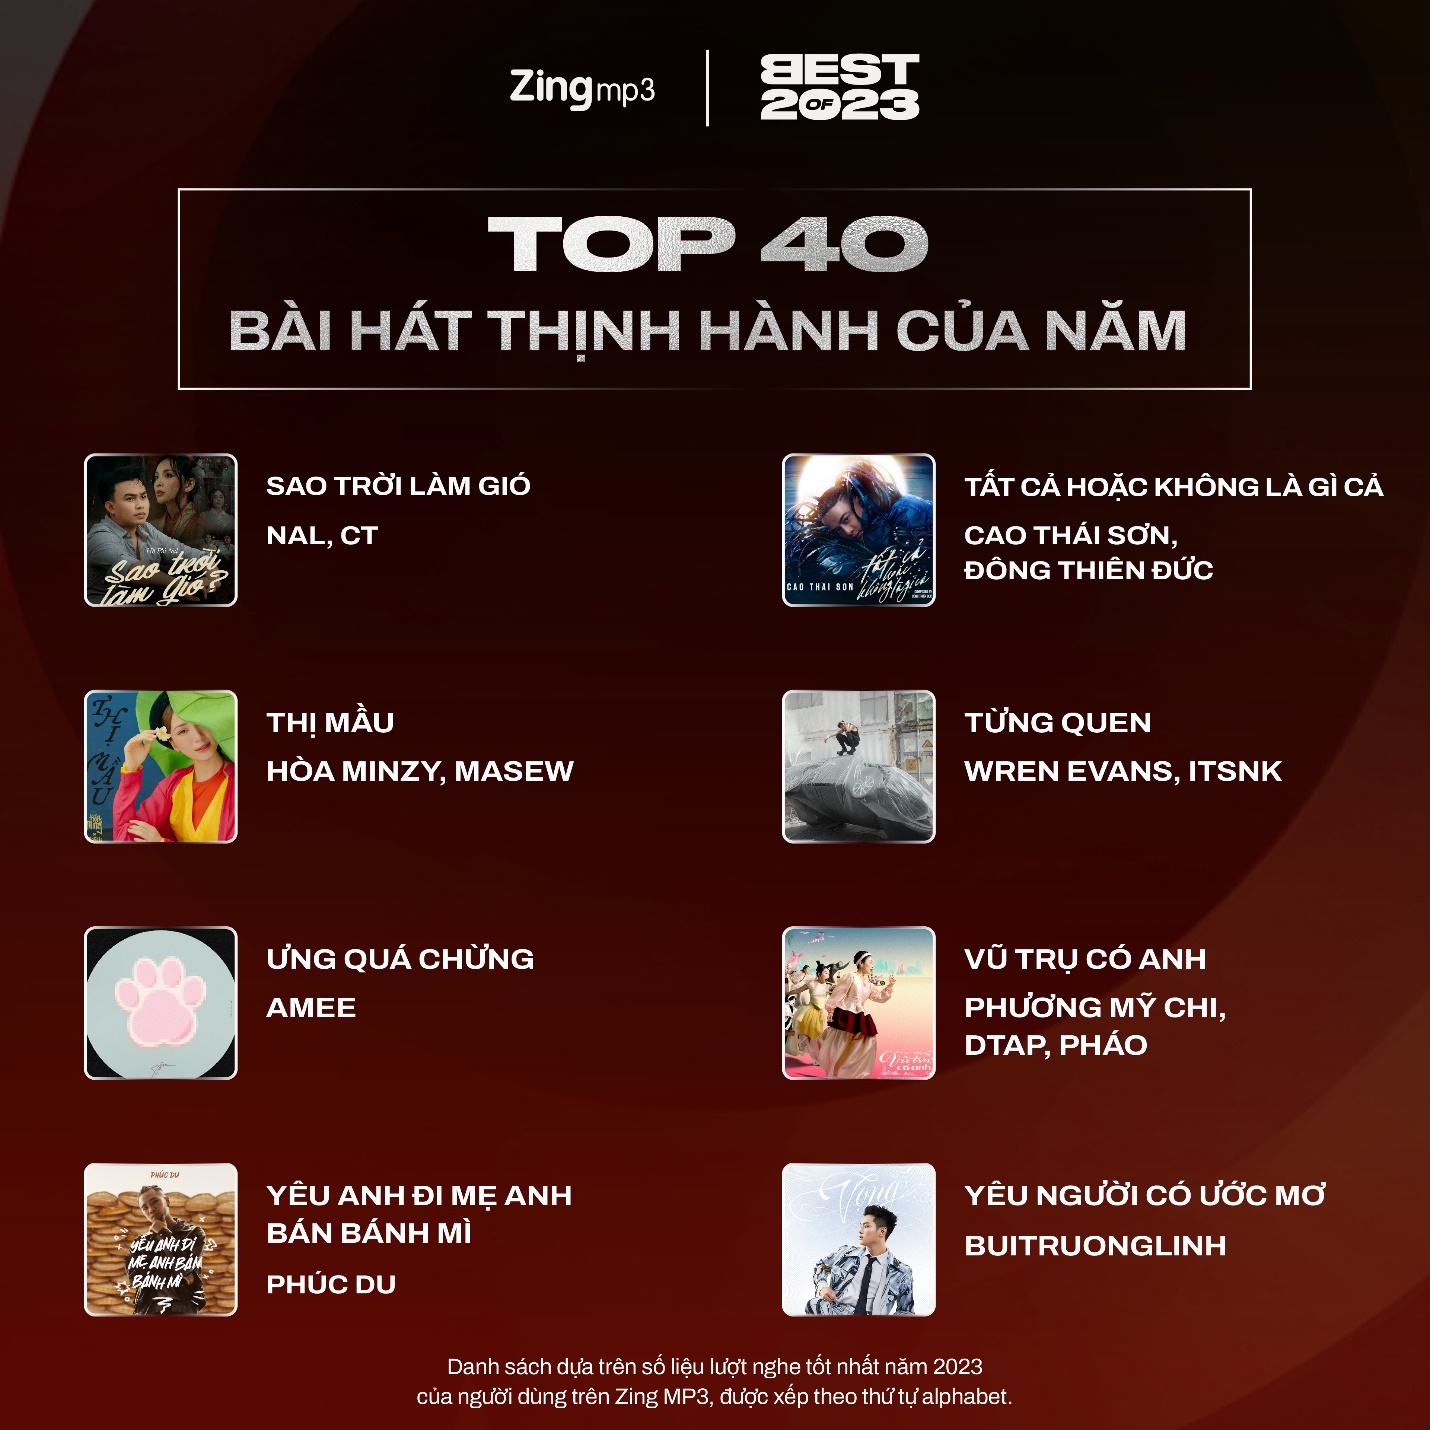 Top 40 nghệ sĩ và bài hát thịnh hành nhất Vpop năm 2023: Tăng Duy Tân lập cú đúp - Ảnh 11.